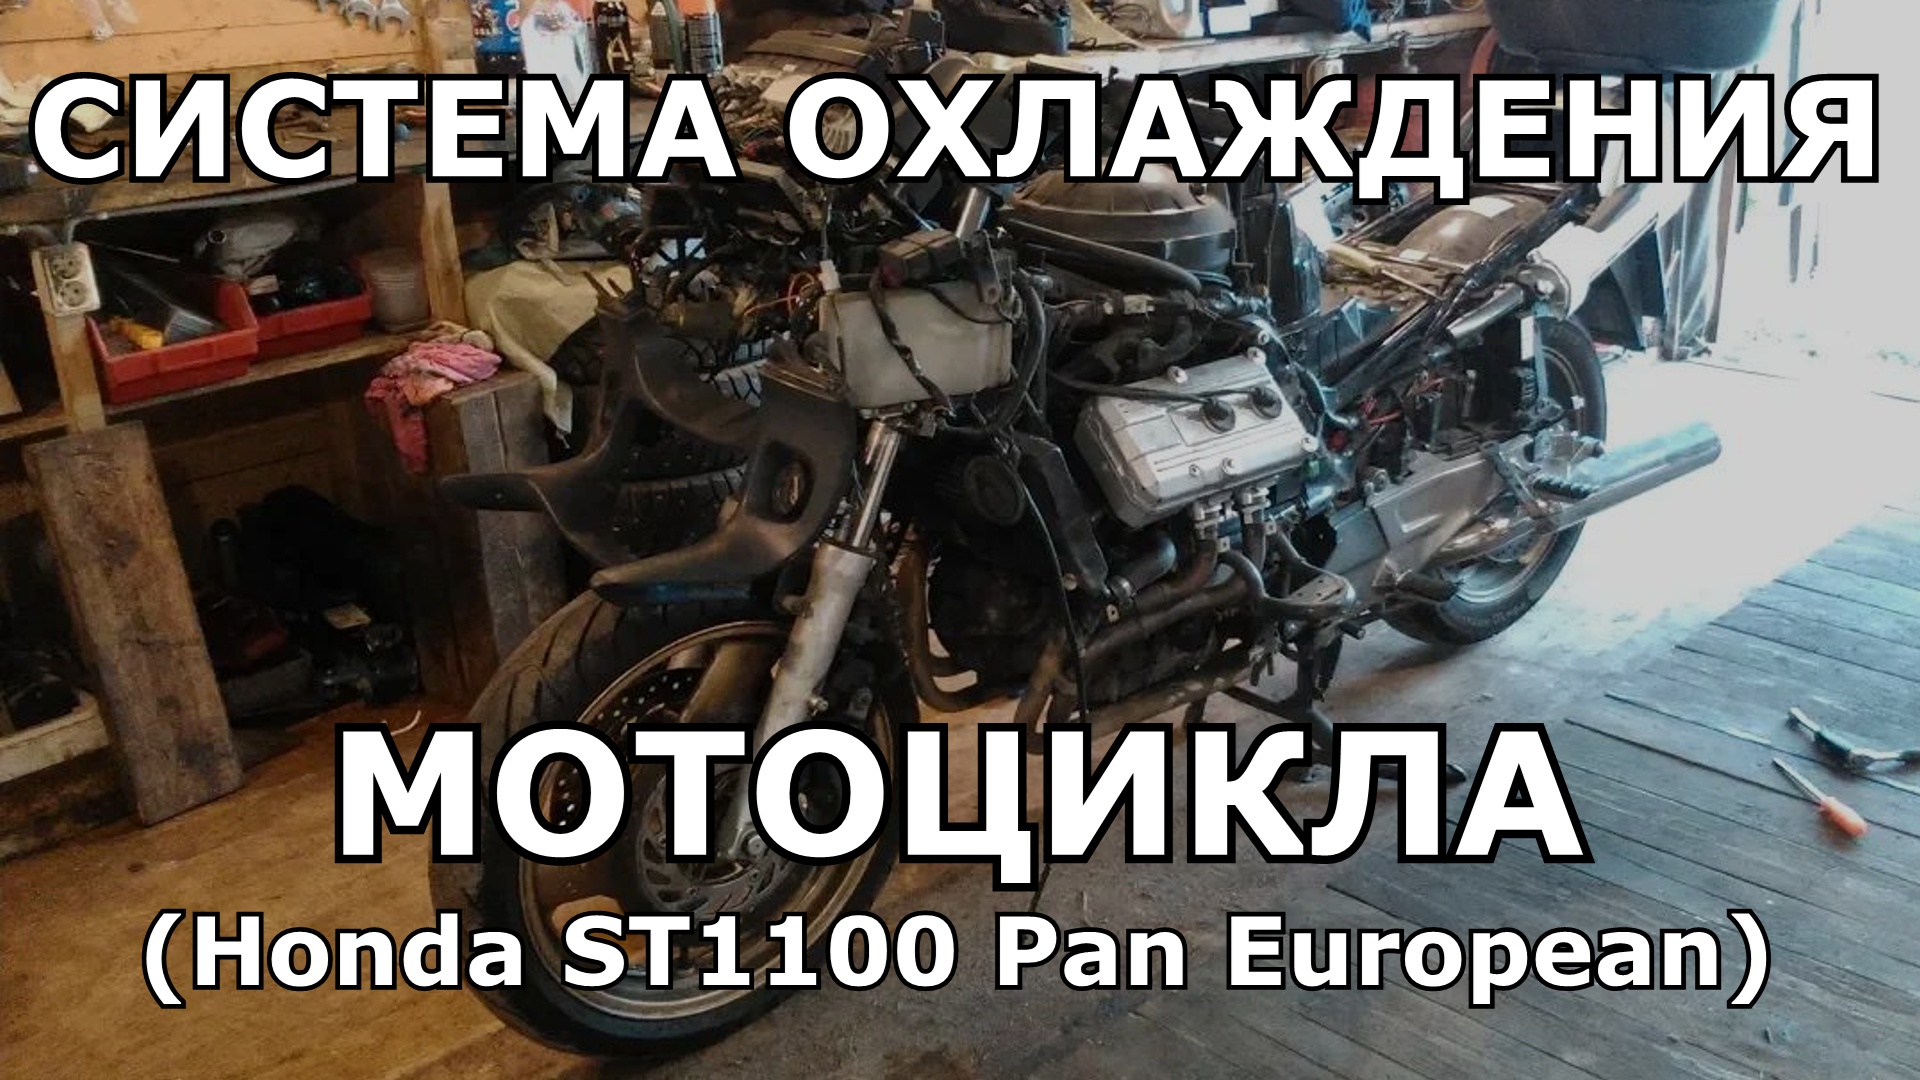 Замена антифриза и промывка системы охлаждения на мотоцикле Honda ST1100 Pan European